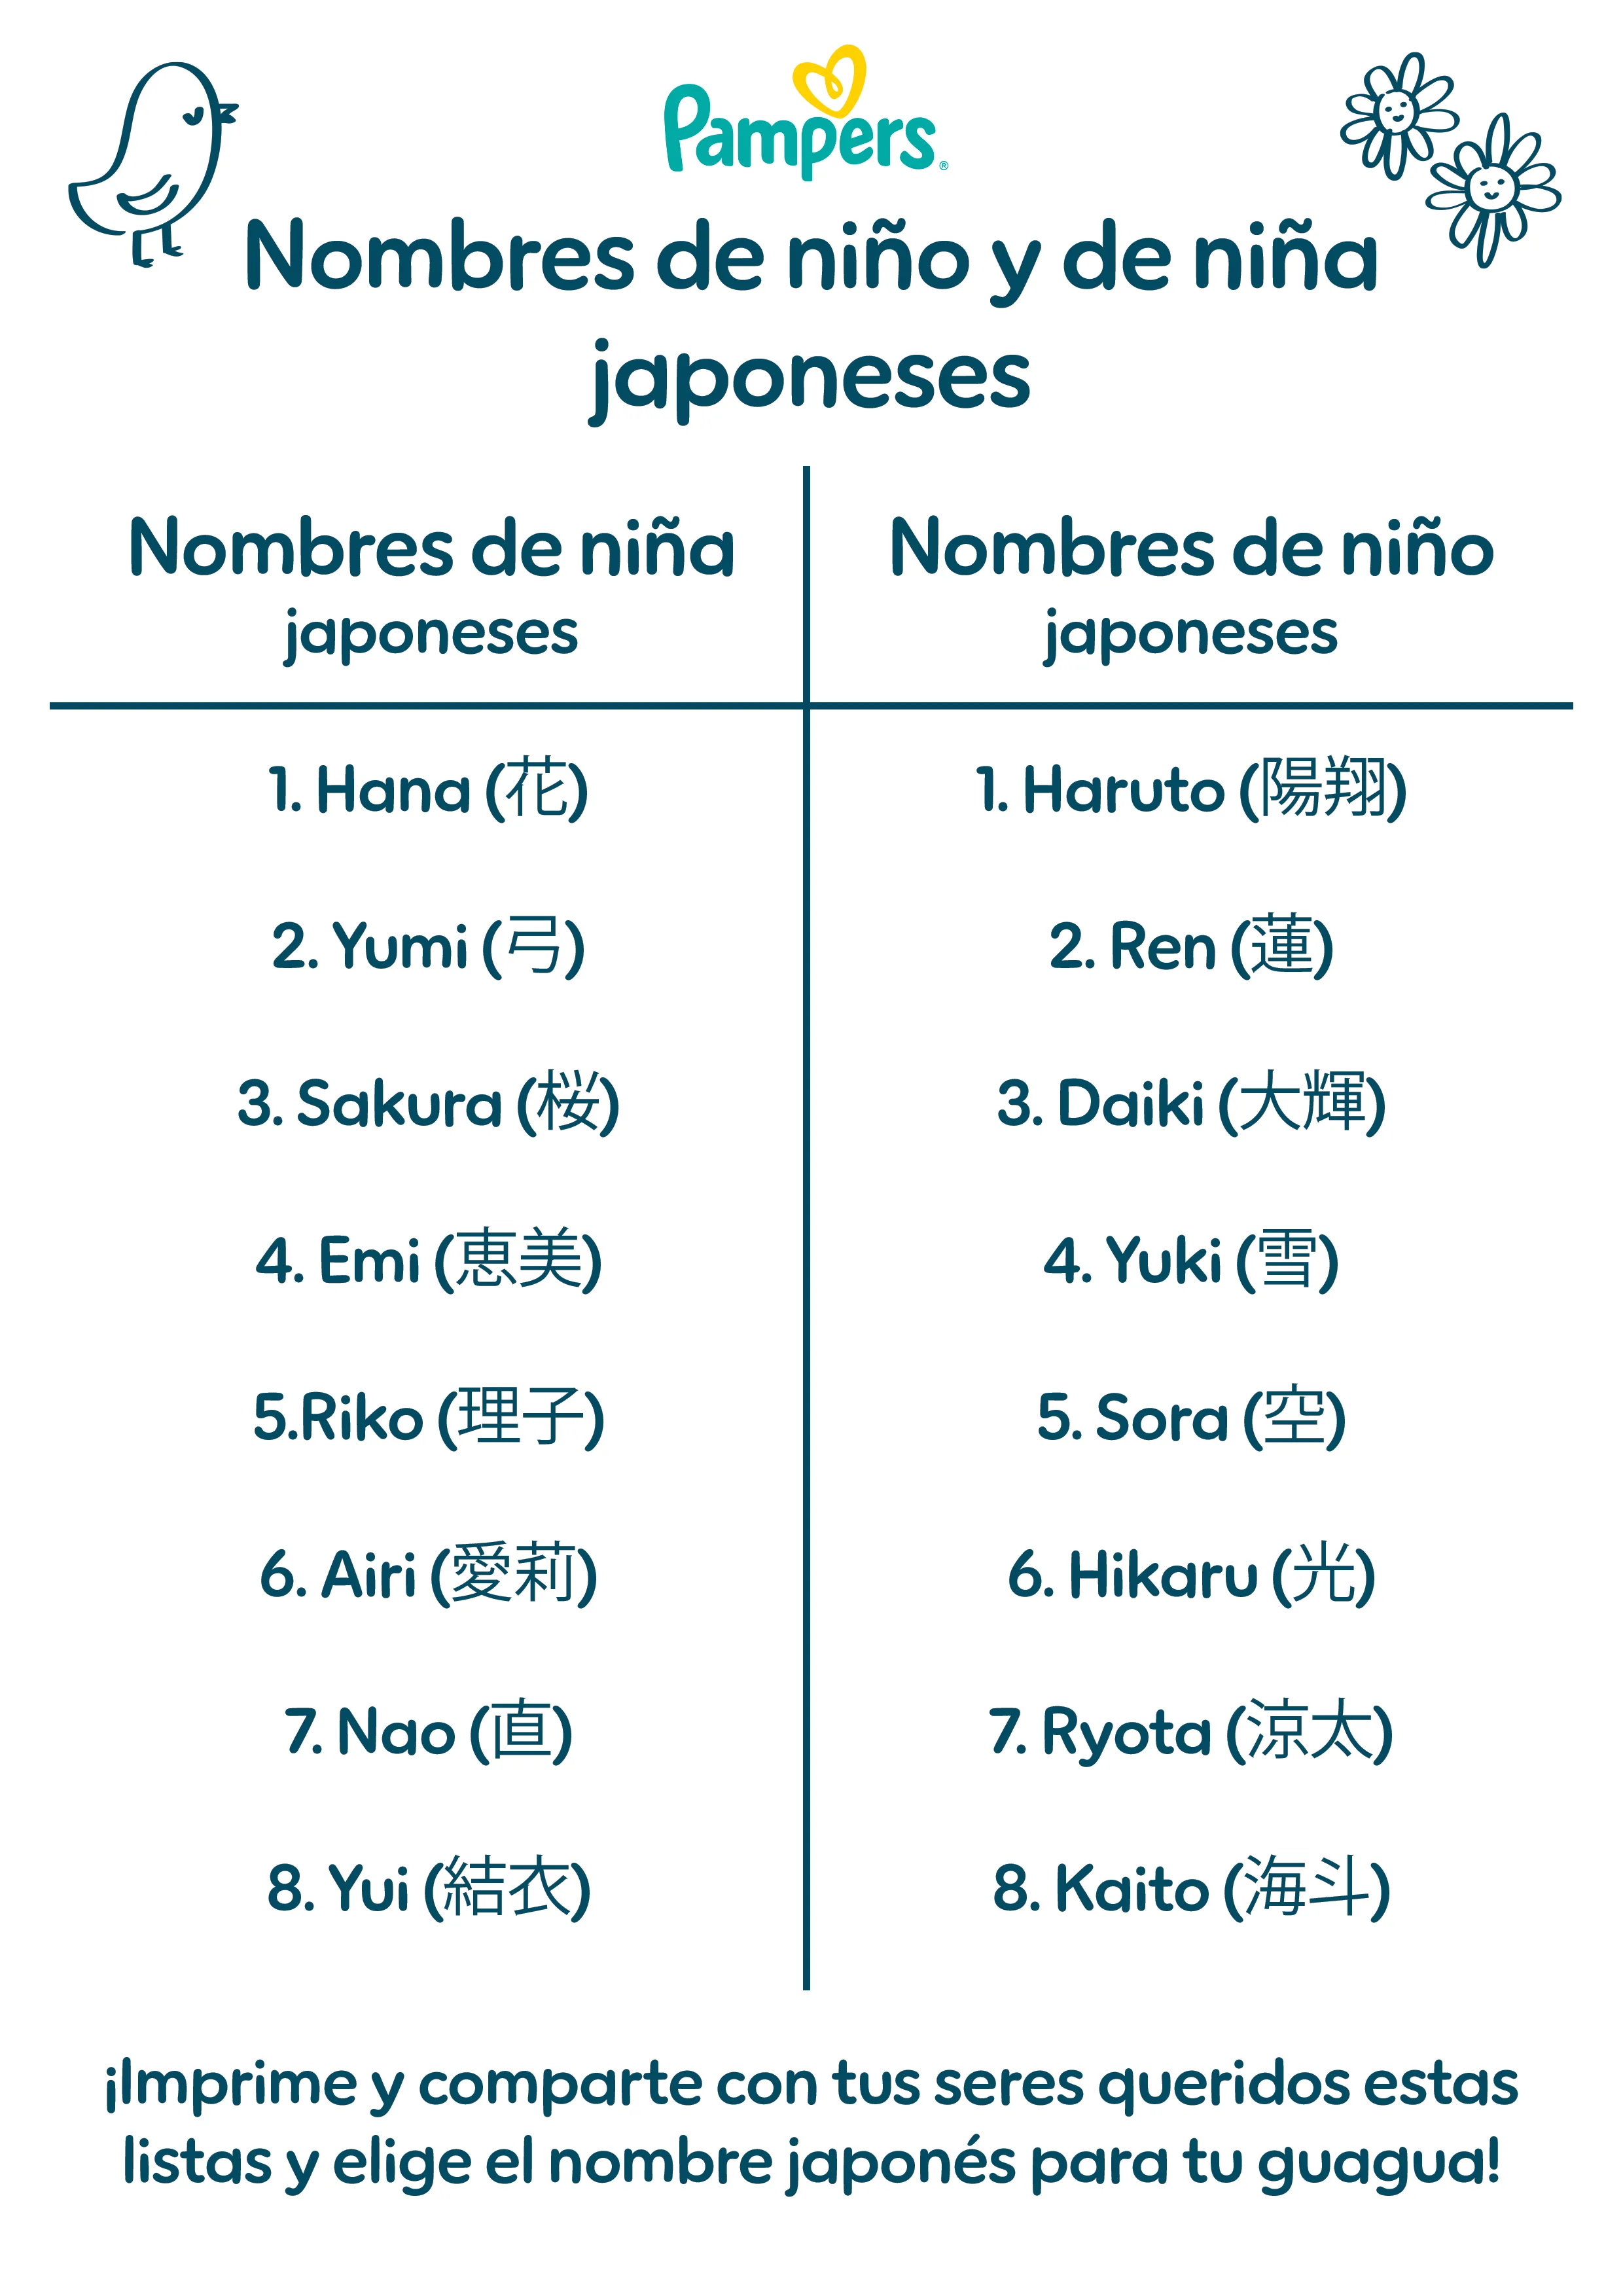 Nombres de niño y de niña japoneses